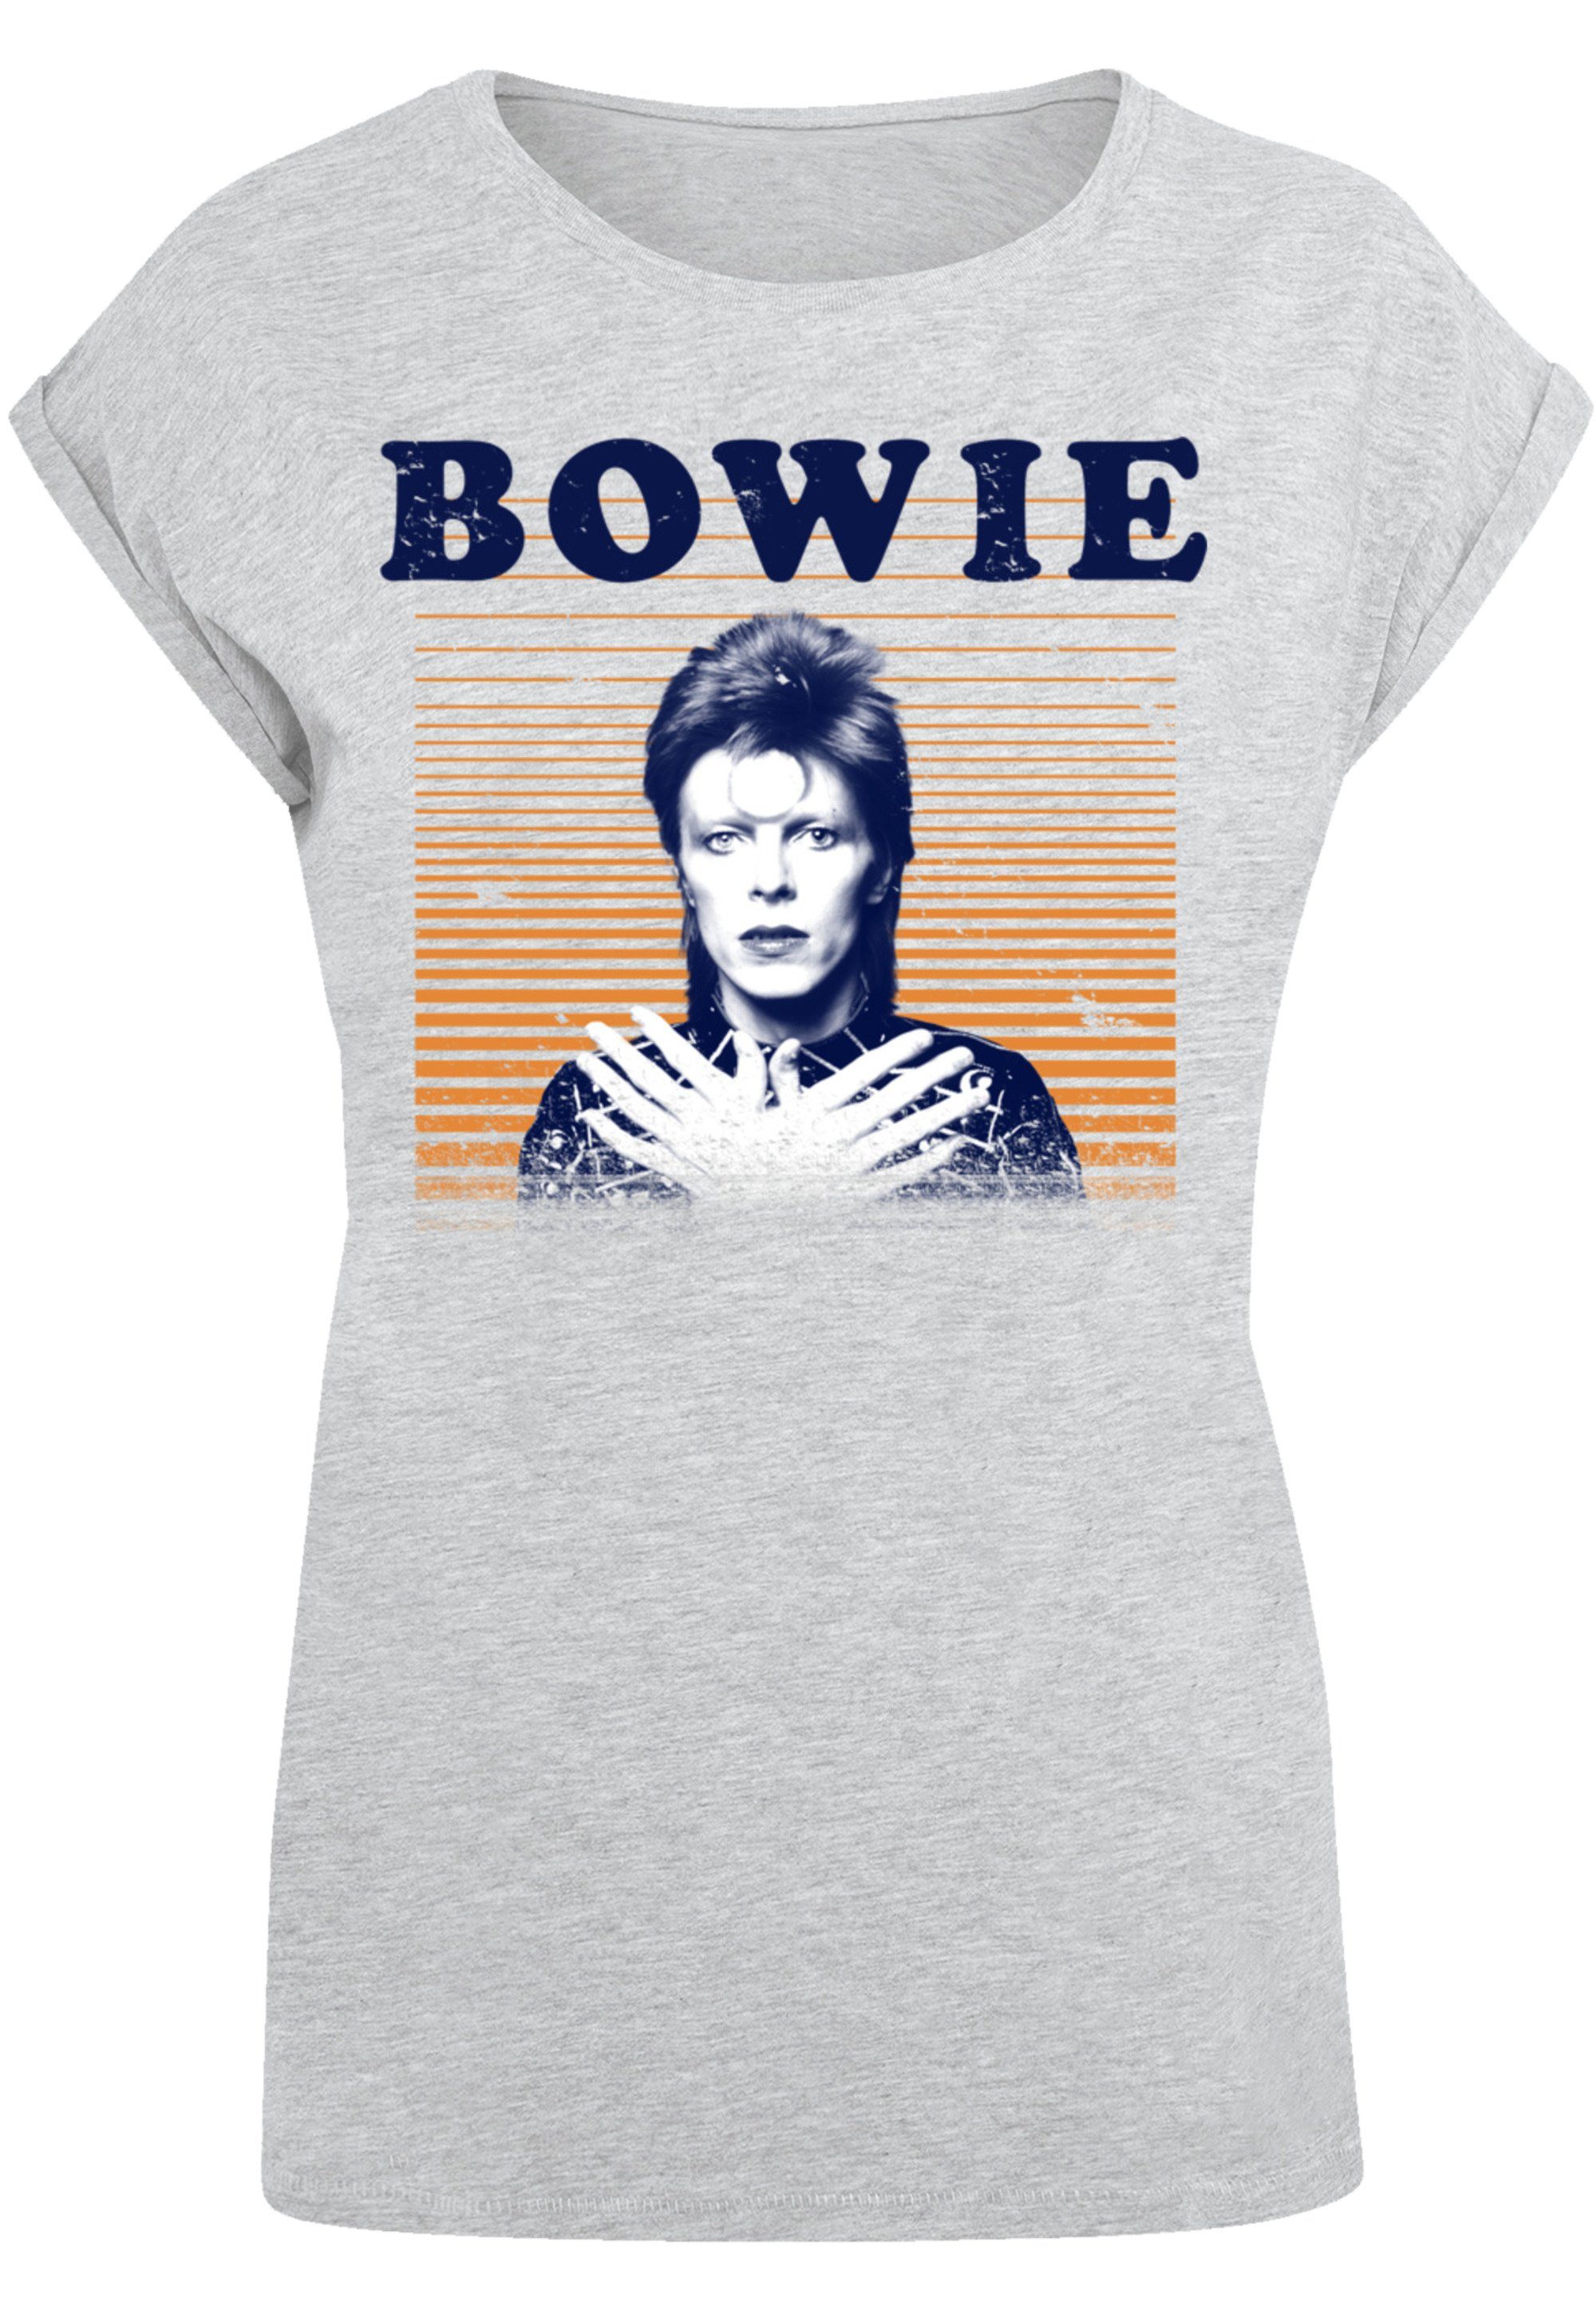 ist Model und Bowie Print, Größe 170 Das cm F4NT4STIC trägt David T-Shirt M Stripes groß Orange